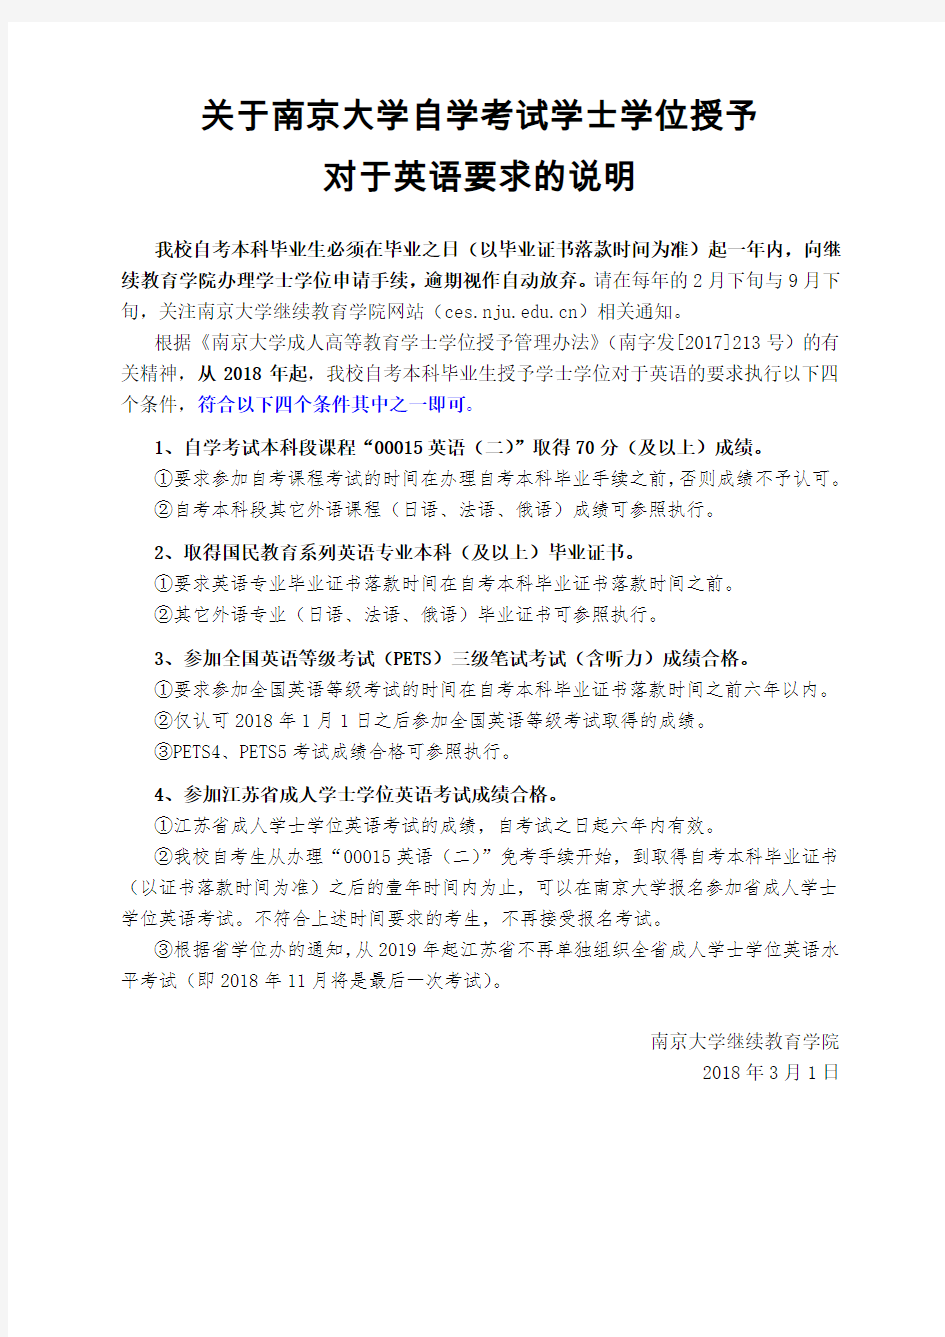 南京大学自学考试学士学位授予对于英语要求的说明